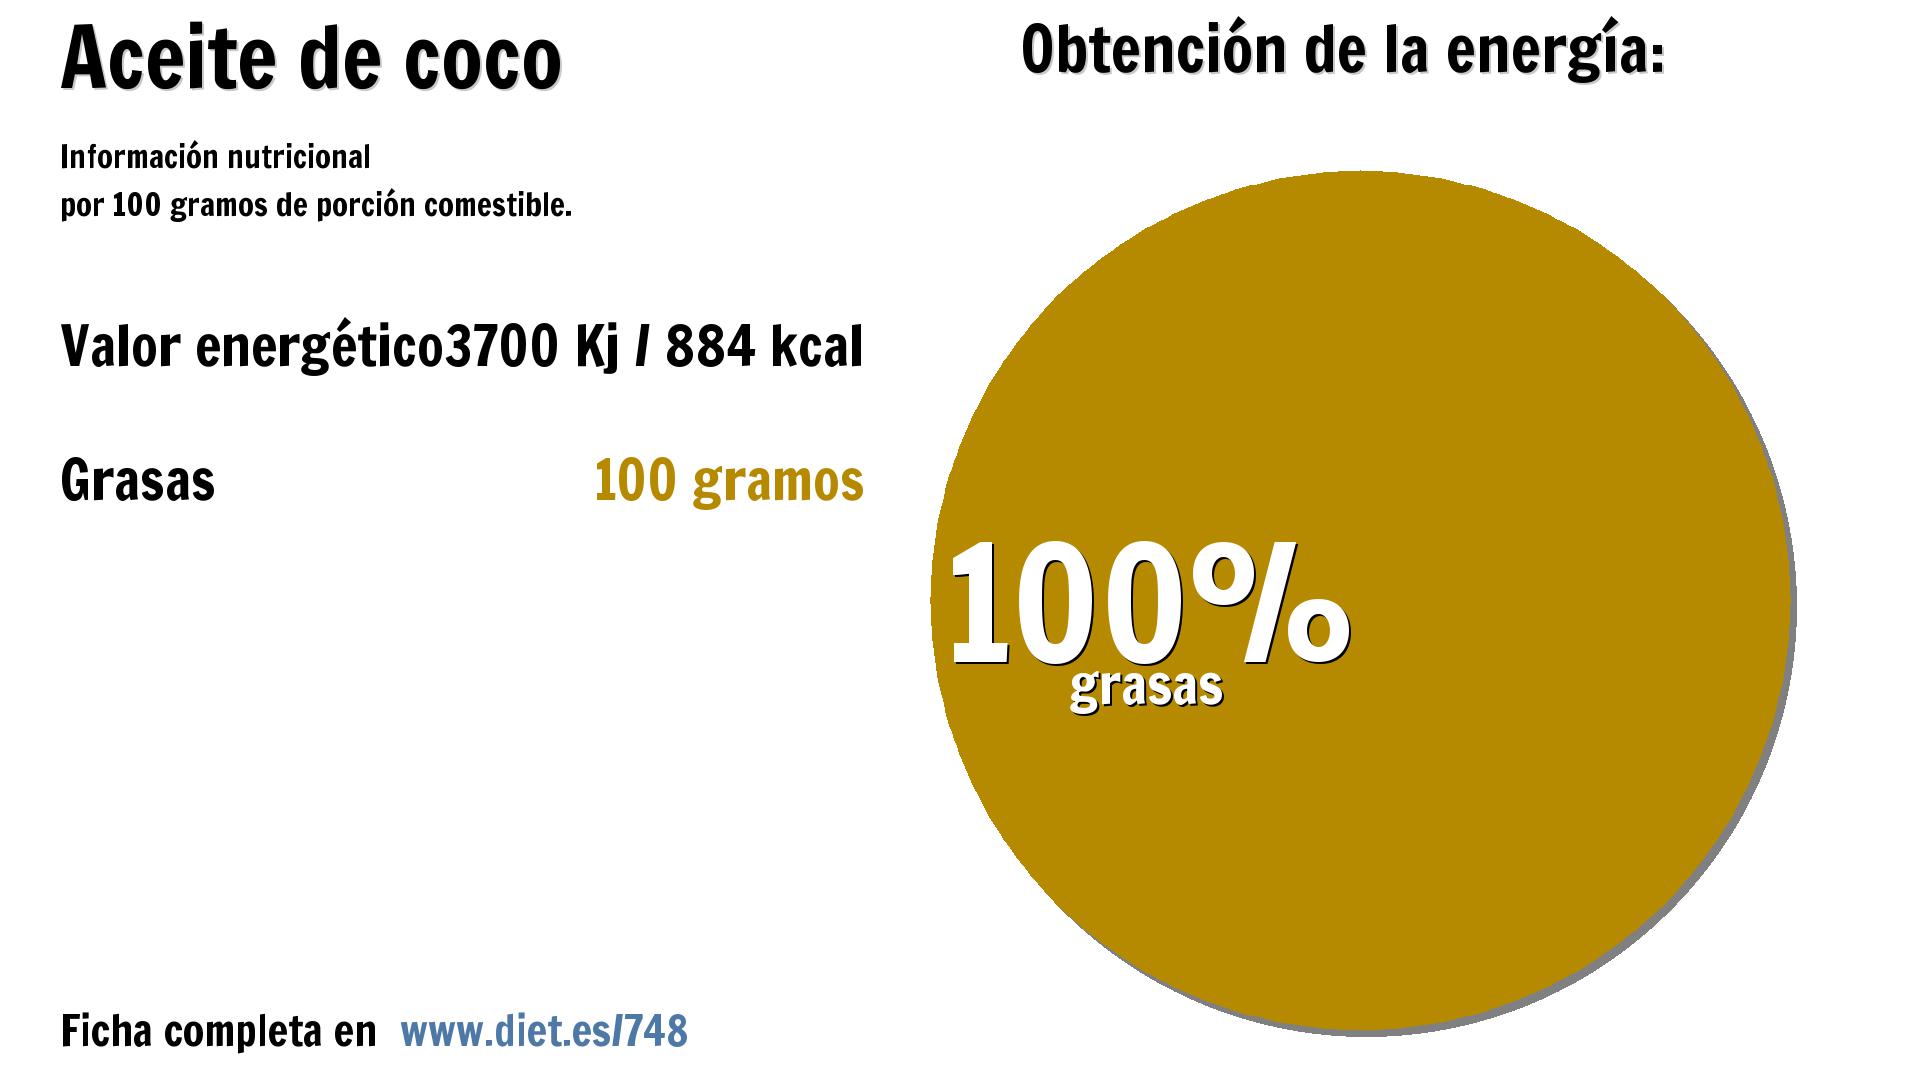 Aceite de coco: energía 3700 Kj y grasas 100 g.